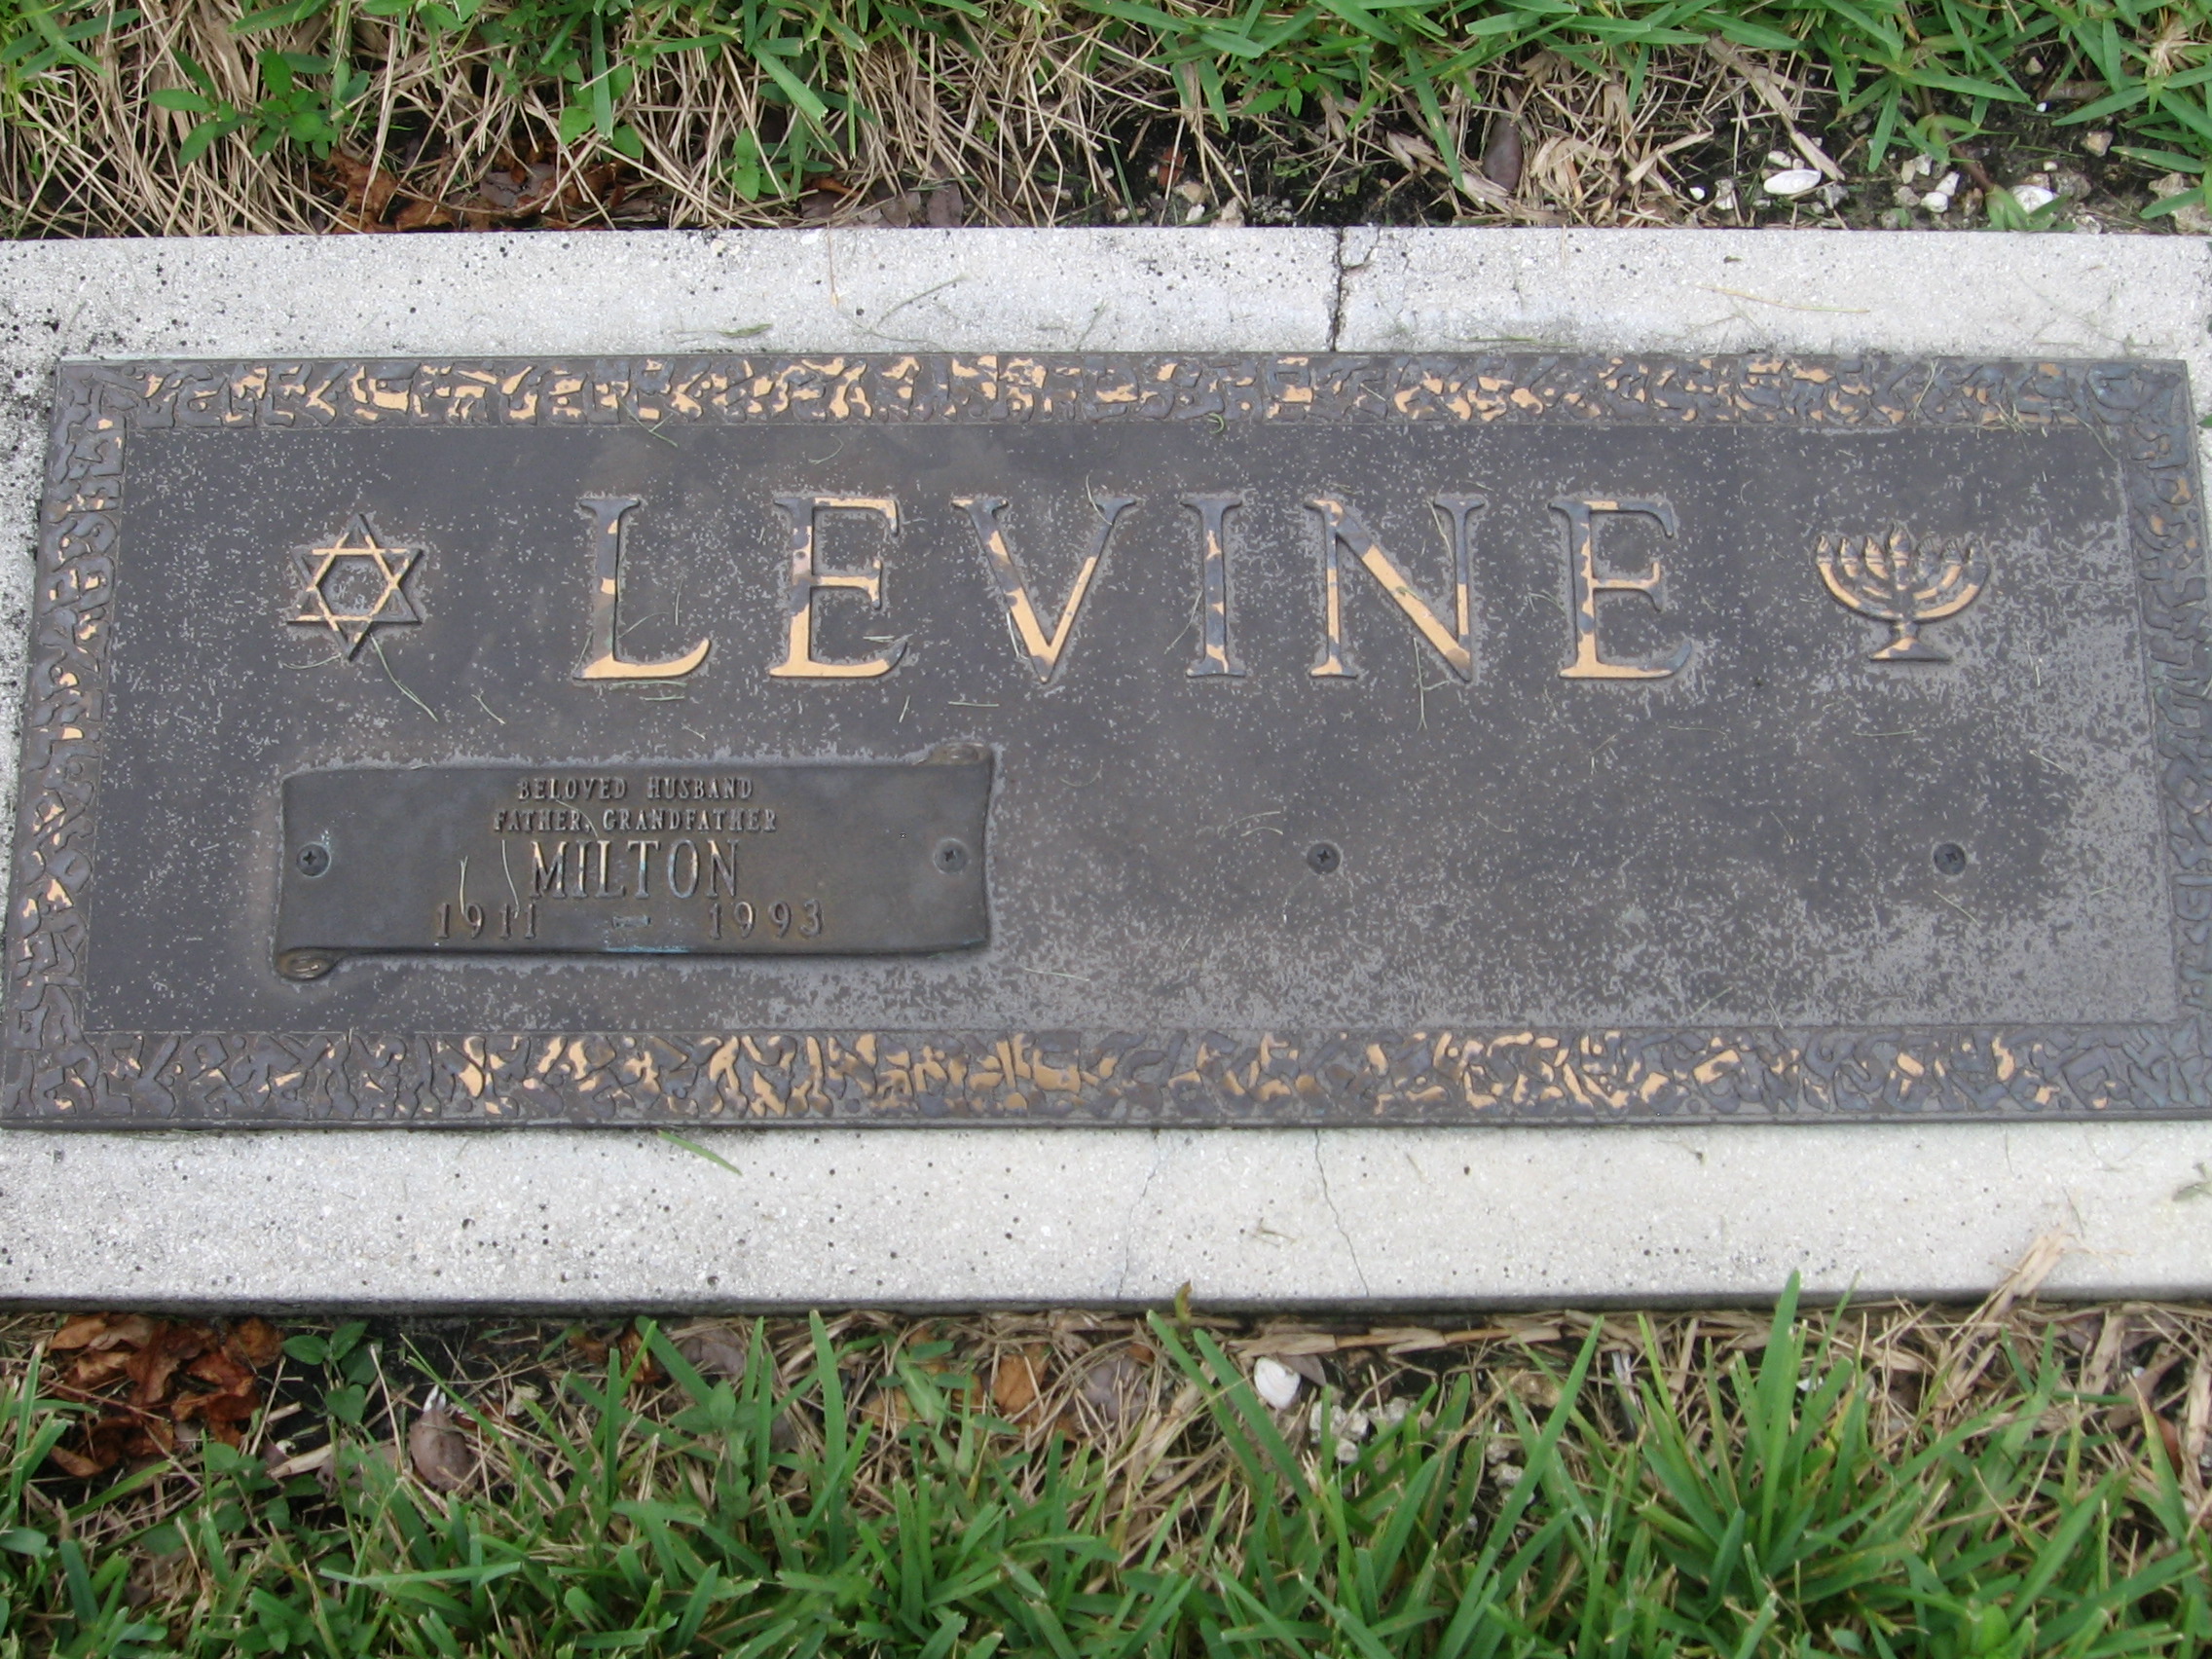 Milton Levine